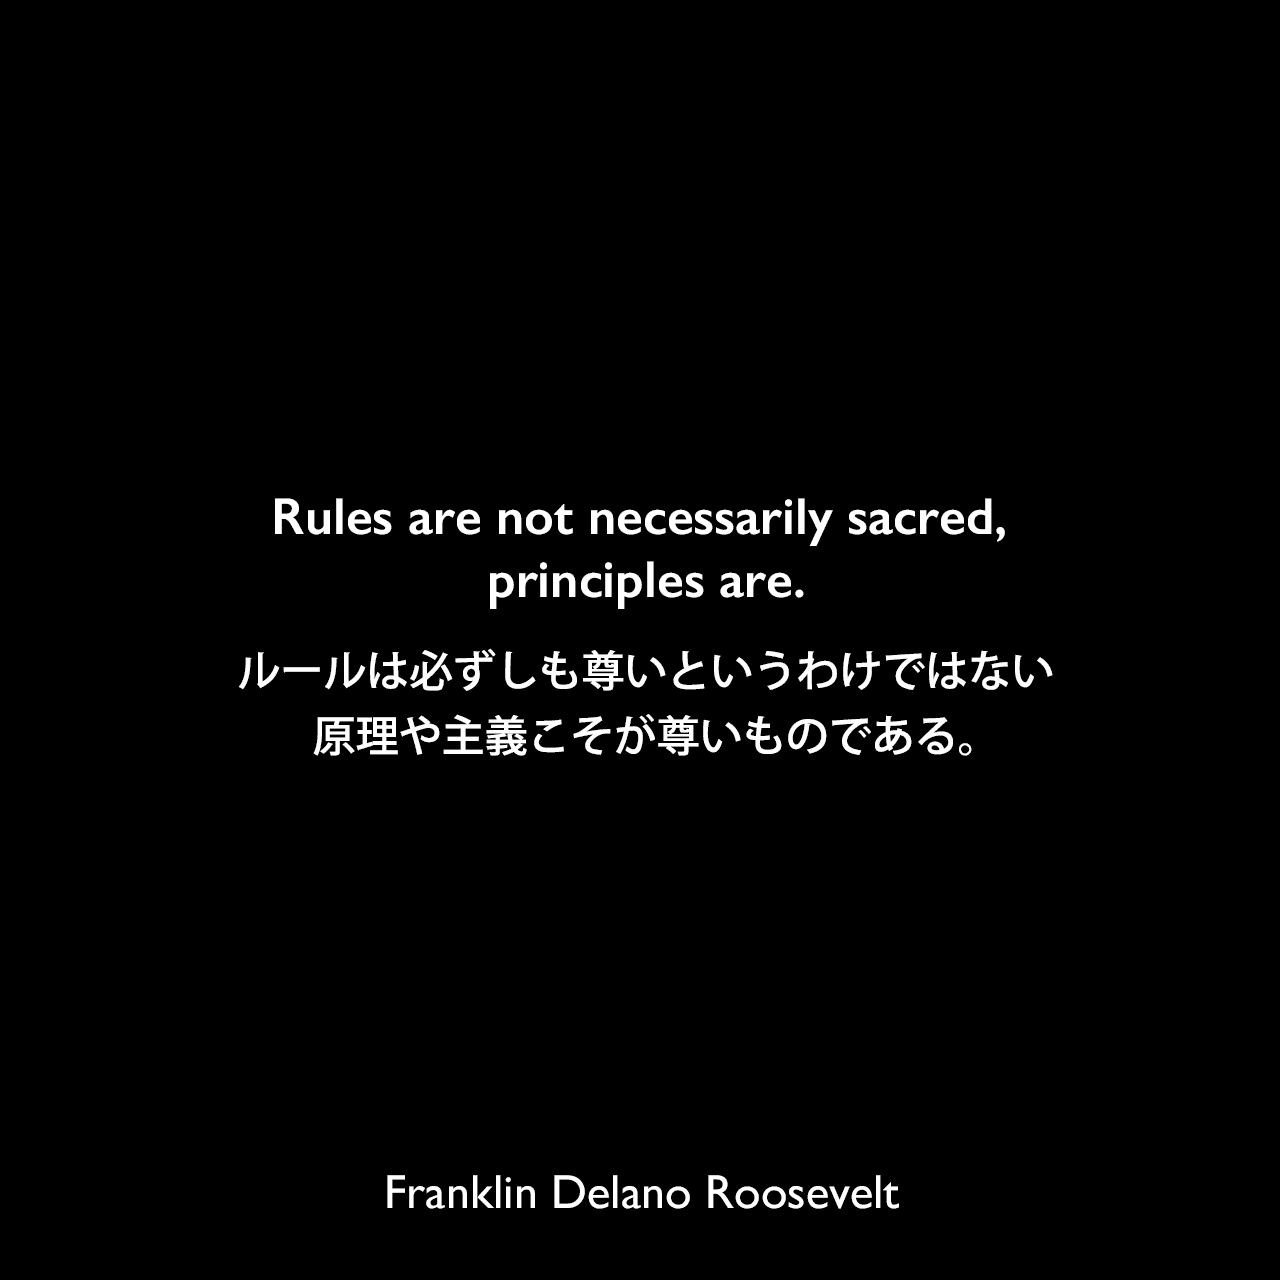 Rules are not necessarily sacred, principles are.ルールは必ずしも尊いというわけではない、原理や主義こそが尊いものである。Franklin Delano Roosevelt